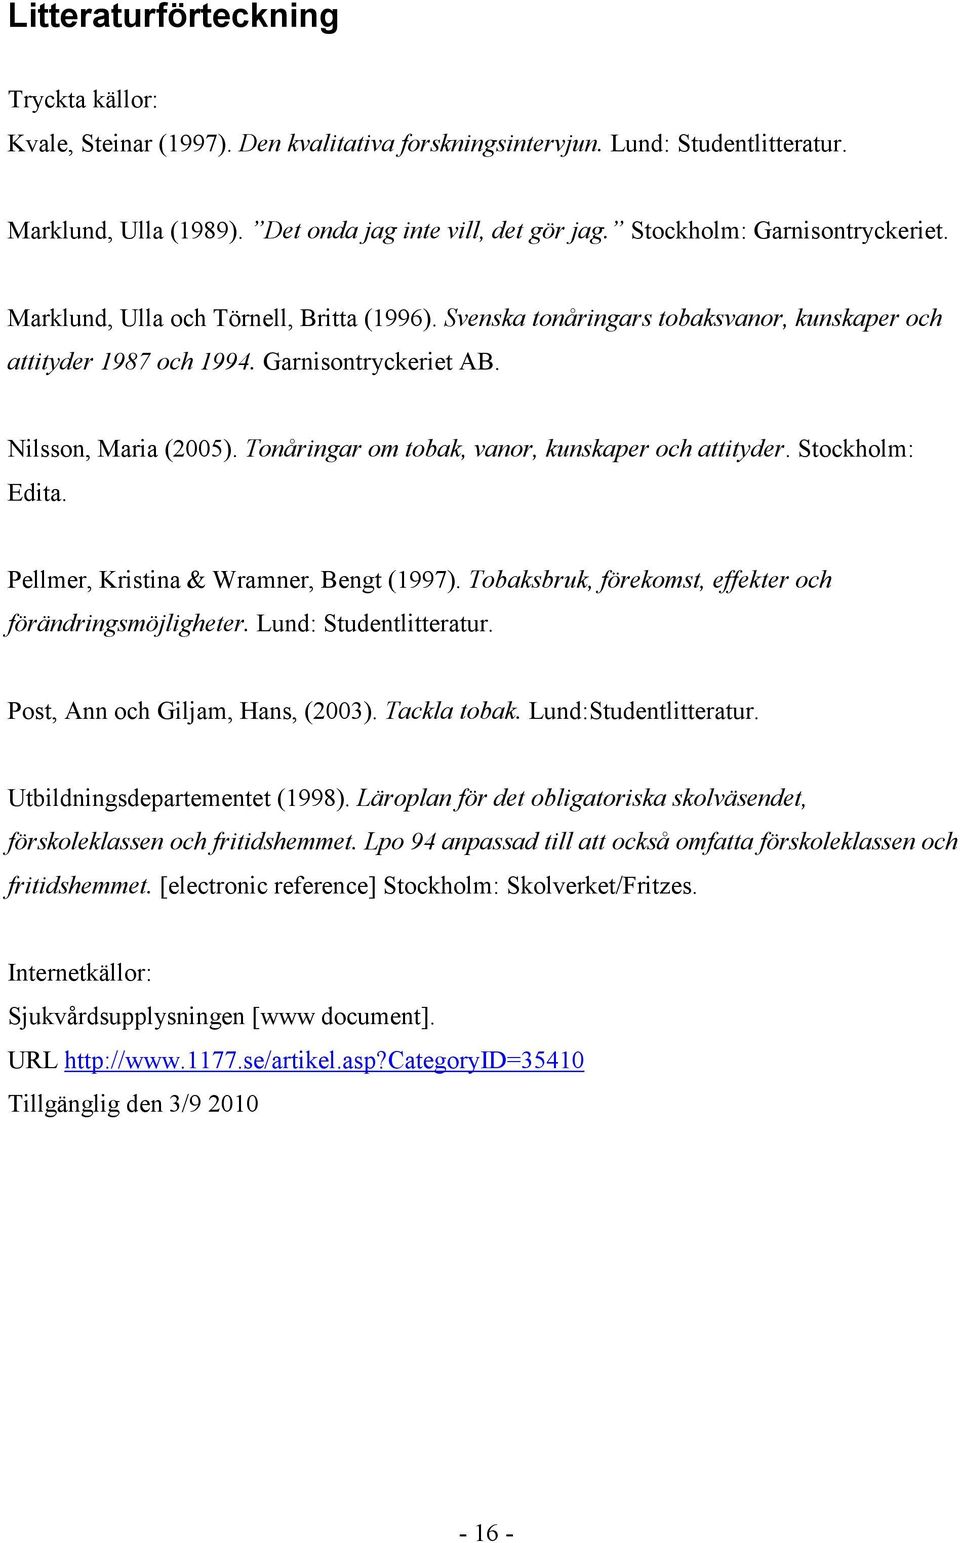 Tonåringar om tobak, vanor, kunskaper och attityder. Stockholm: Edita. Pellmer, Kristina & Wramner, Bengt (1997). Tobaksbruk, förekomst, effekter och förändringsmöjligheter. Lund: Studentlitteratur.